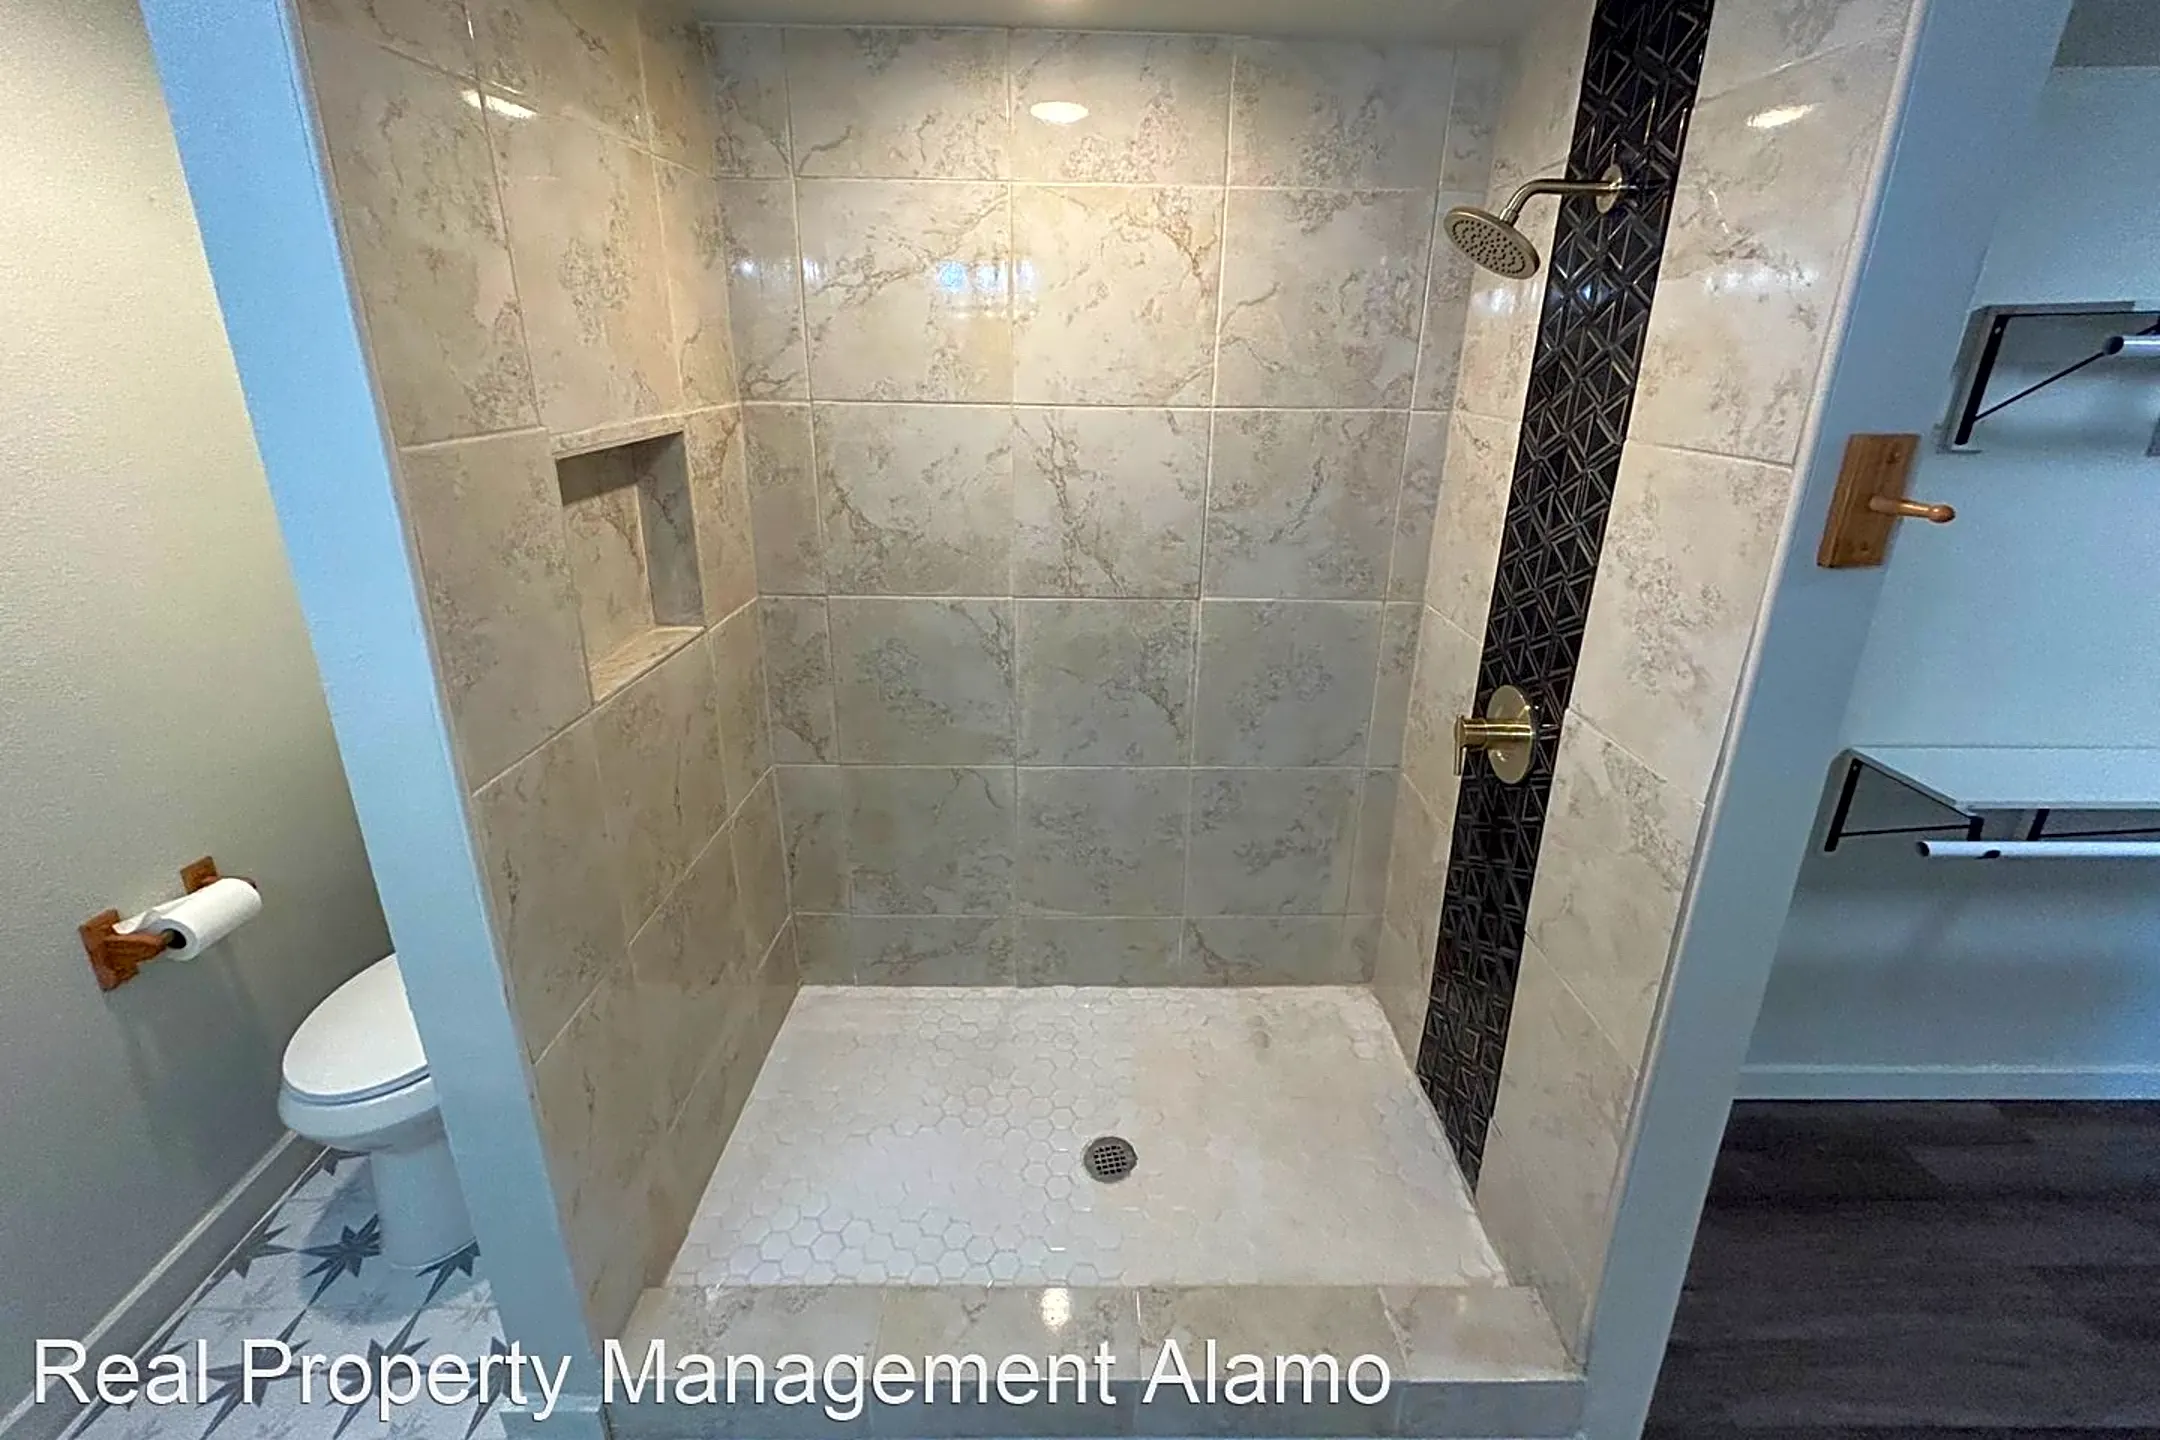 Bathroom - 1245 Kayton Avenue - San Antonio, TX